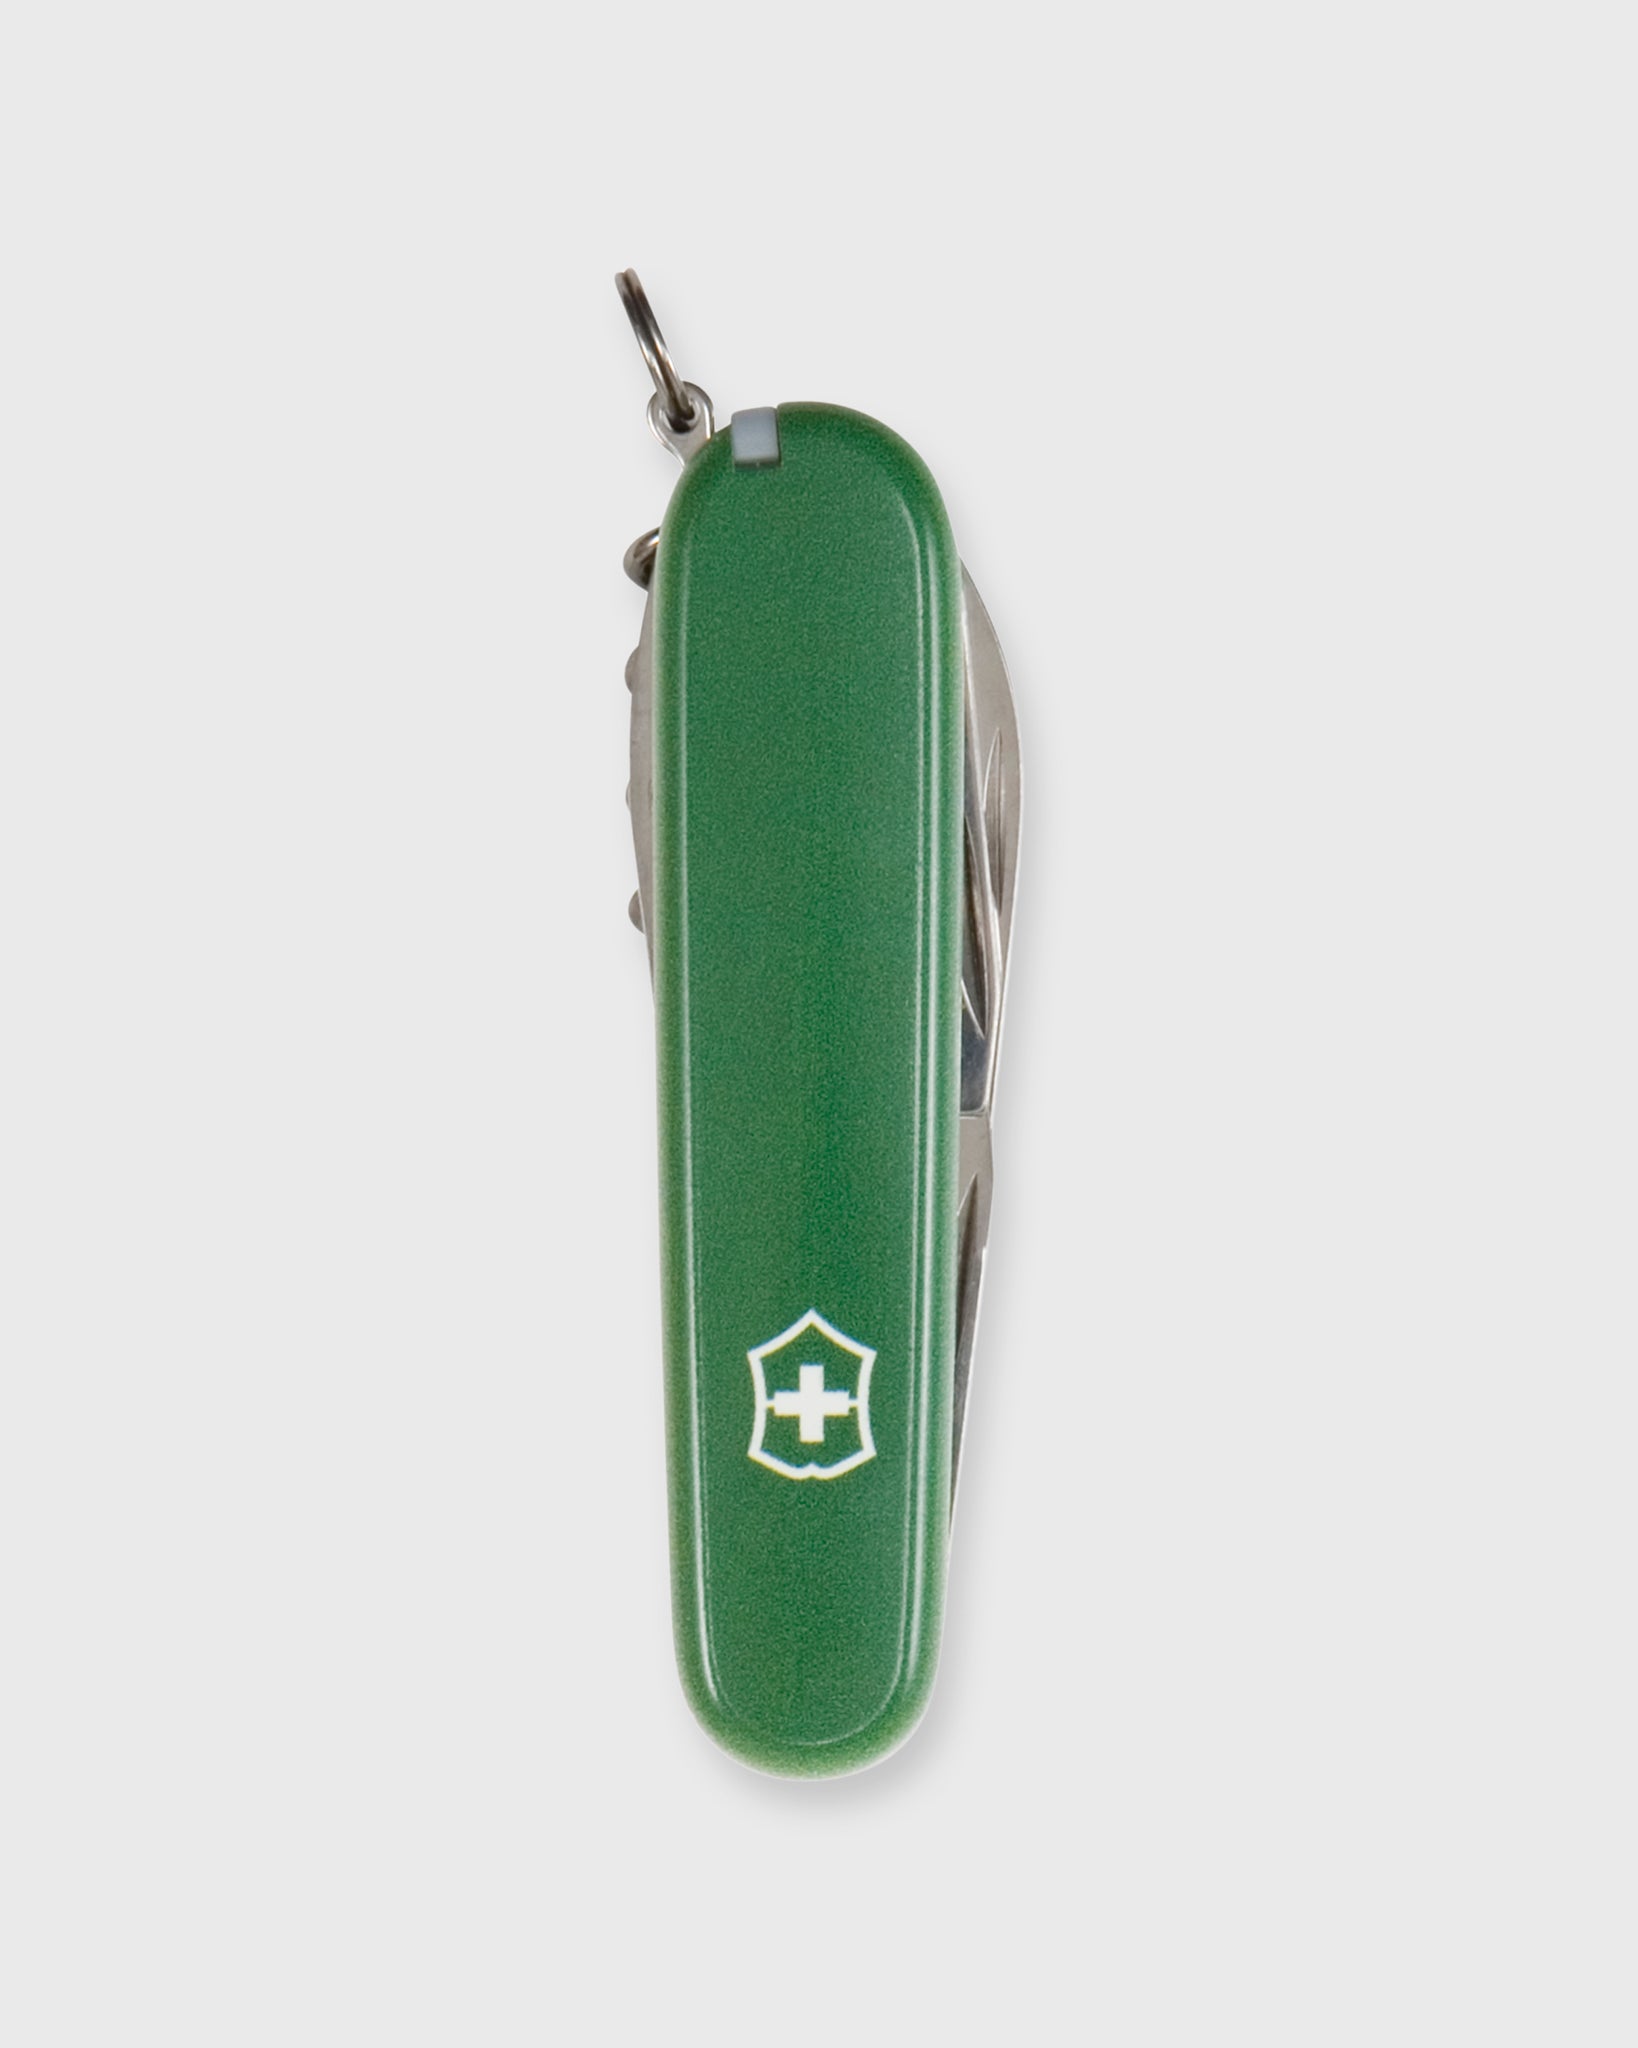 Large Swiss Army Knife In Green/White Mashburn 